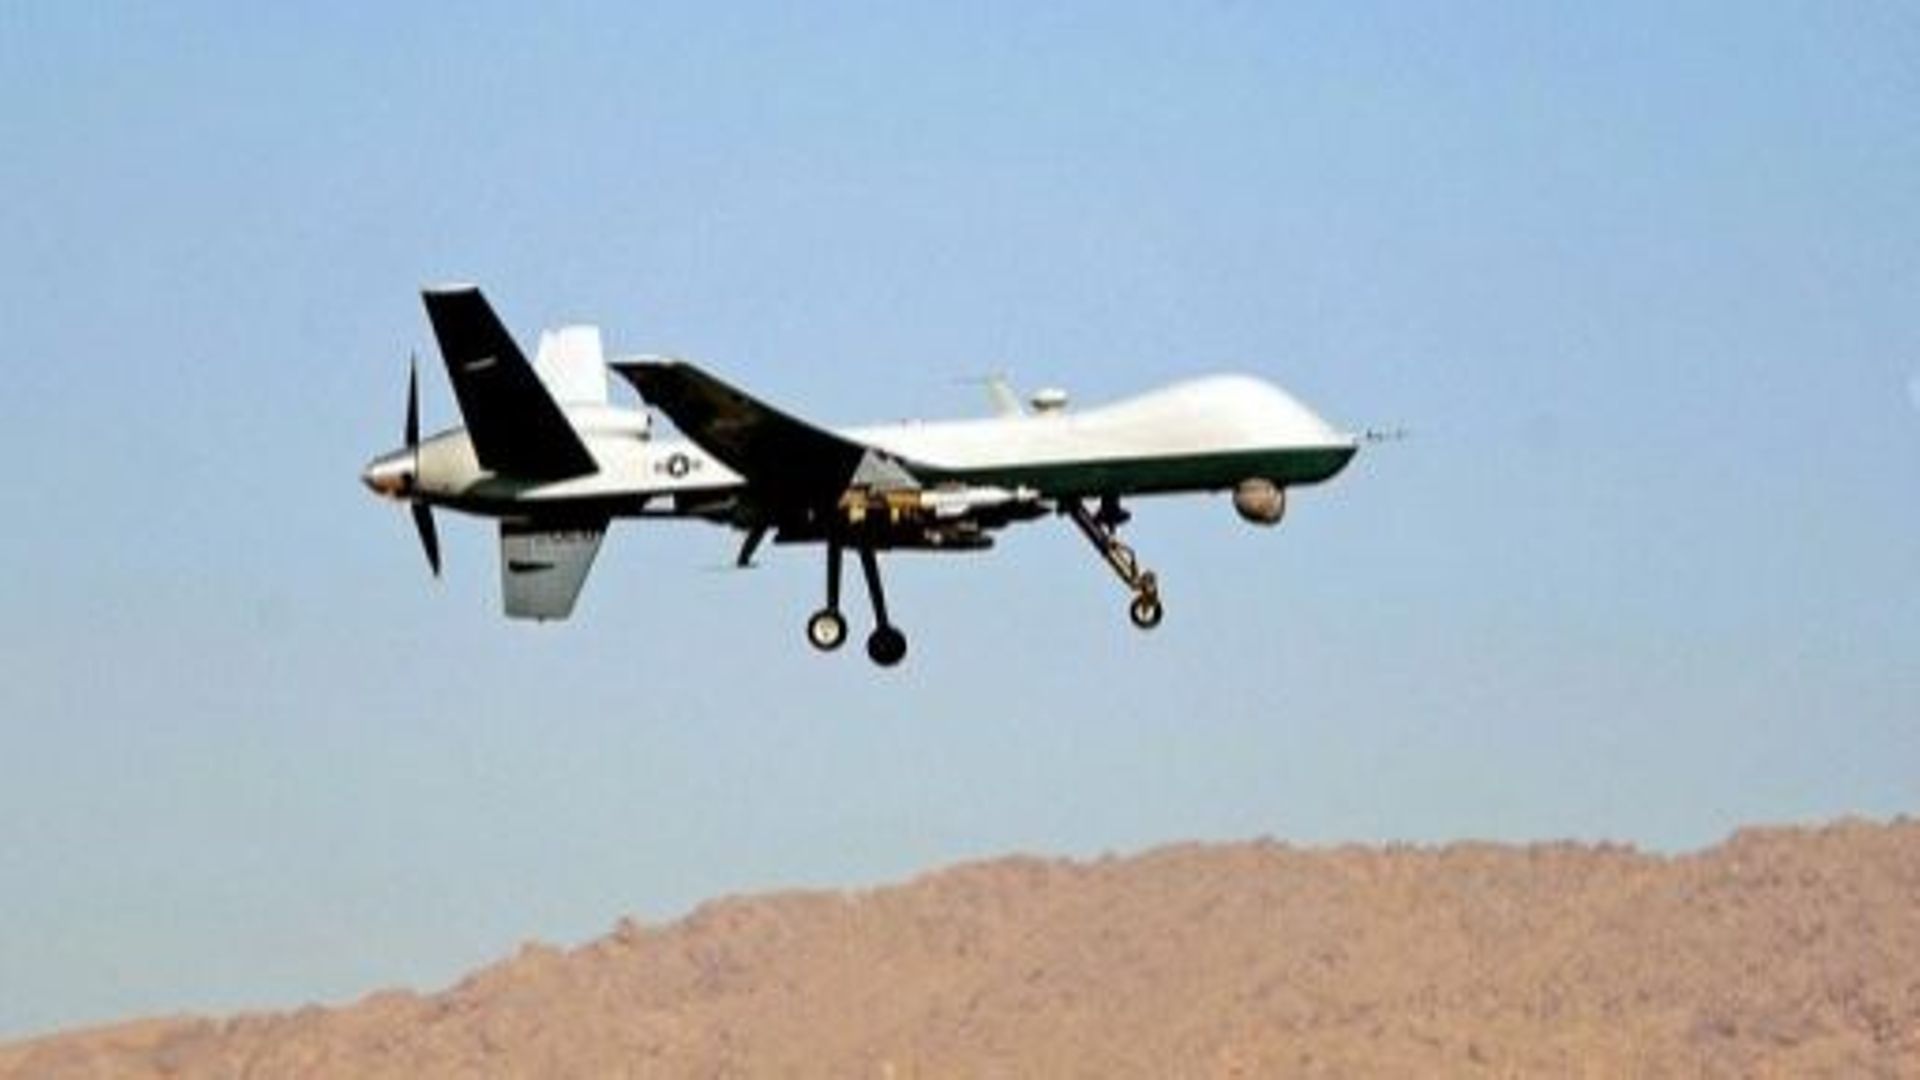 le-bilan-des-drones-americains-4700-personnes-tuees-selon-un-senateur